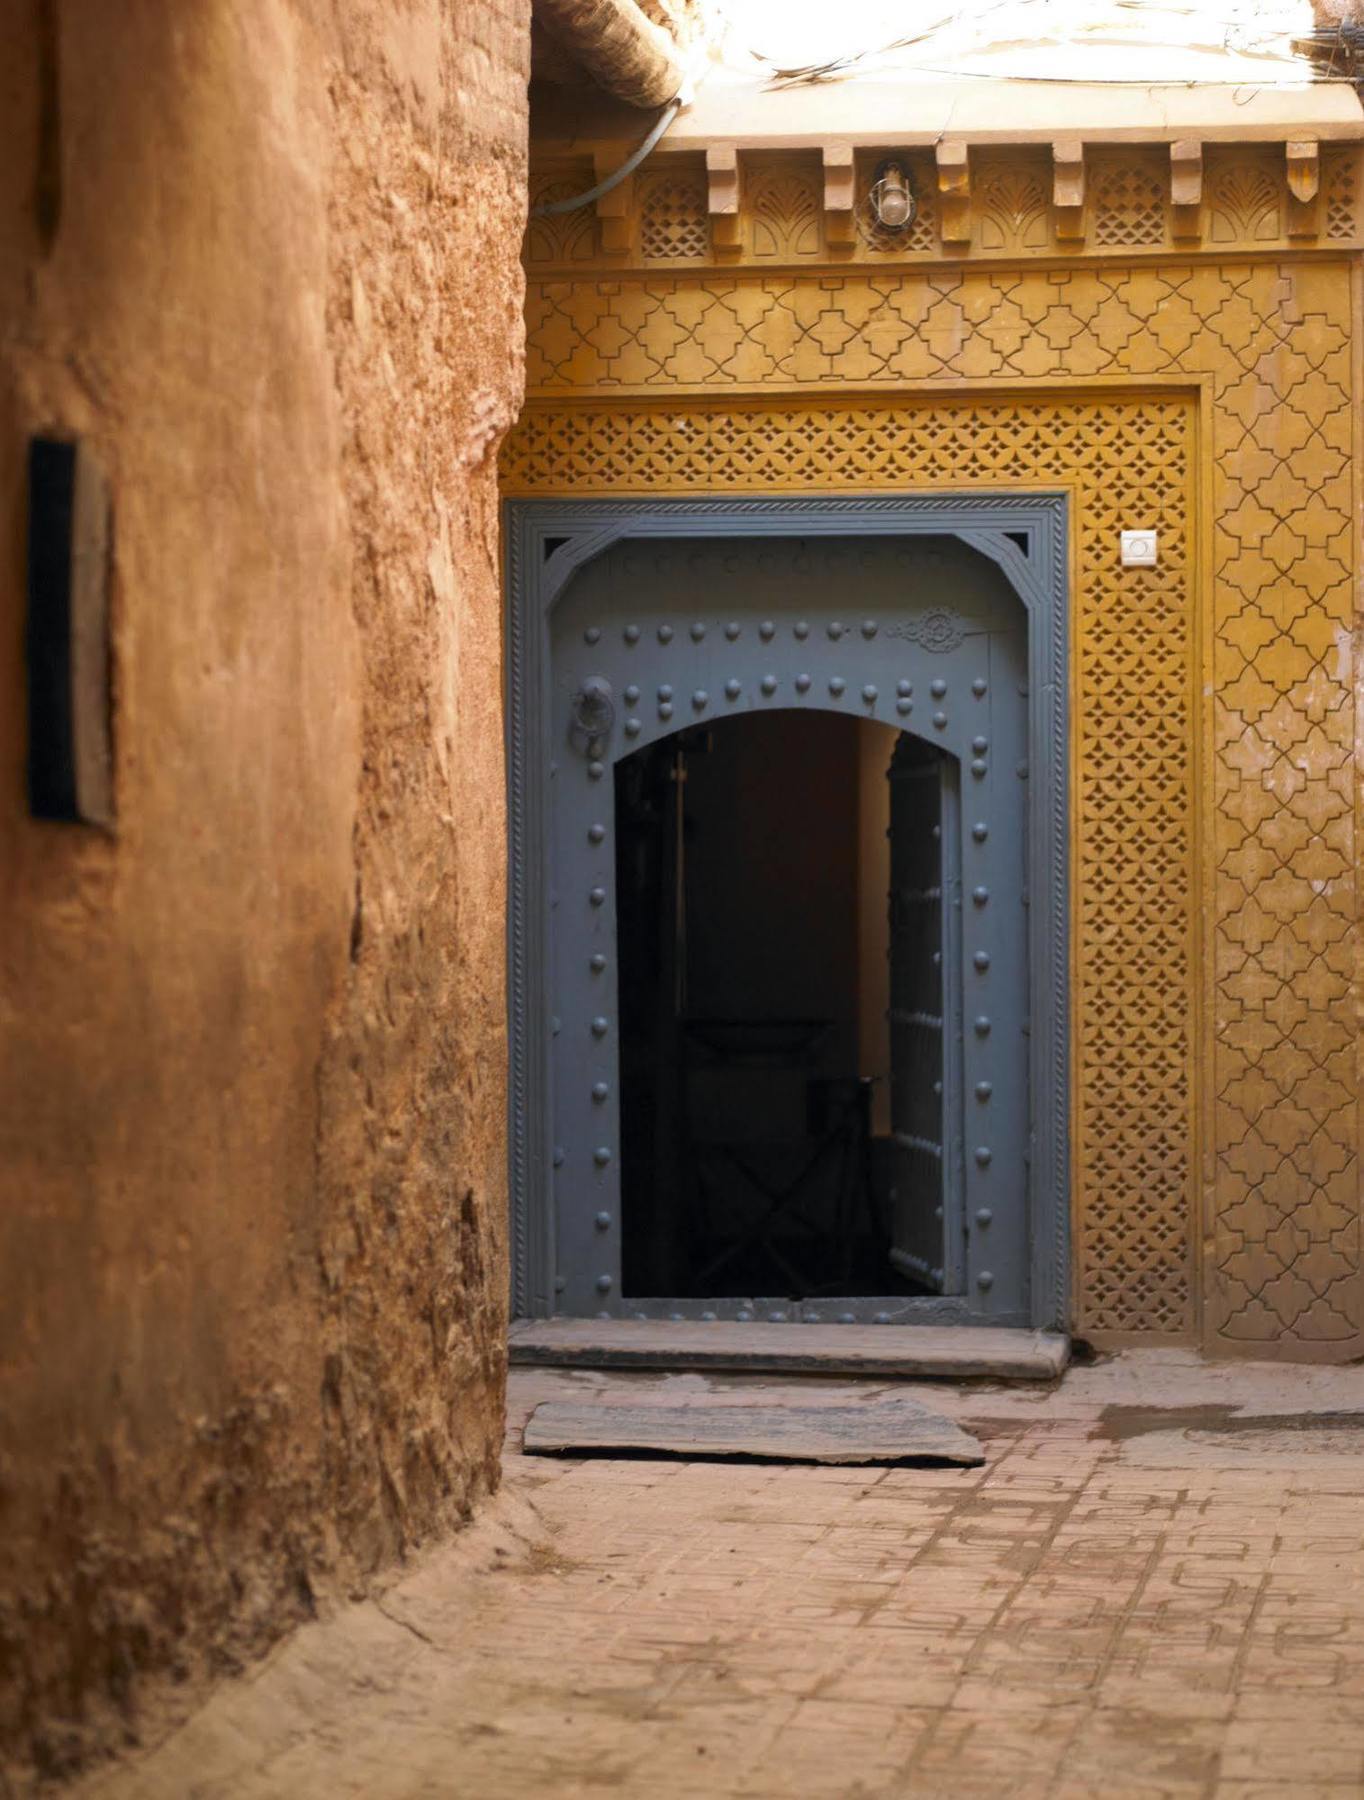 Ryad Dyor Marrakesh Extérieur photo